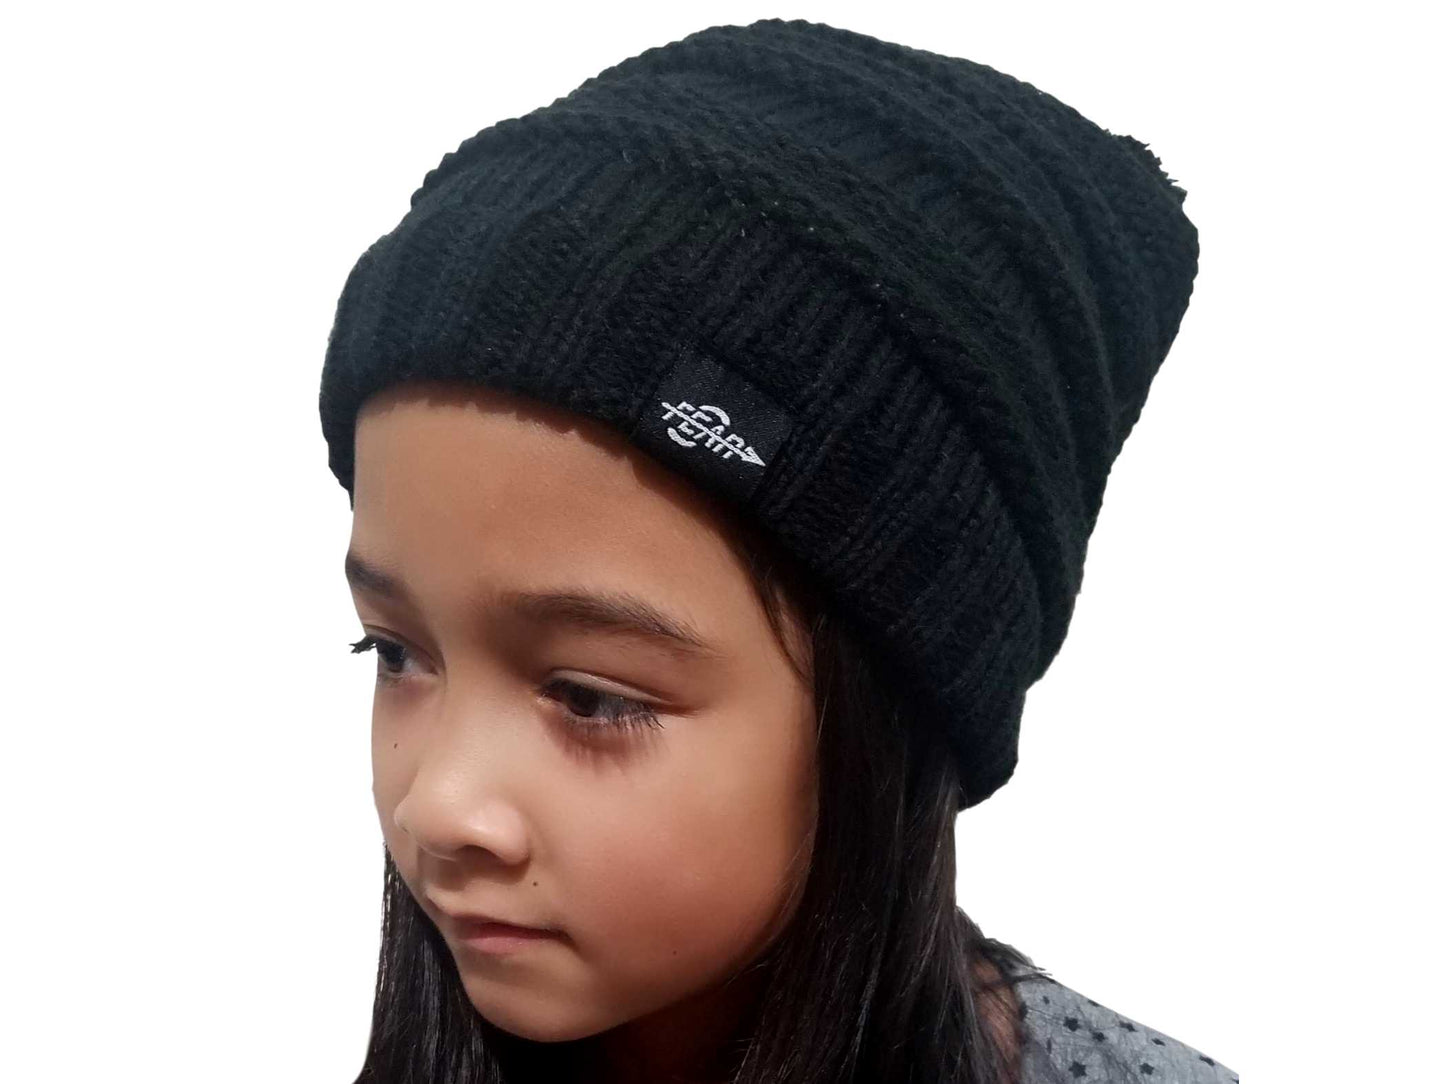 Fear0 NJ Warmest Plush Insulated Black Beanie Hat Girls/Kids Fear0